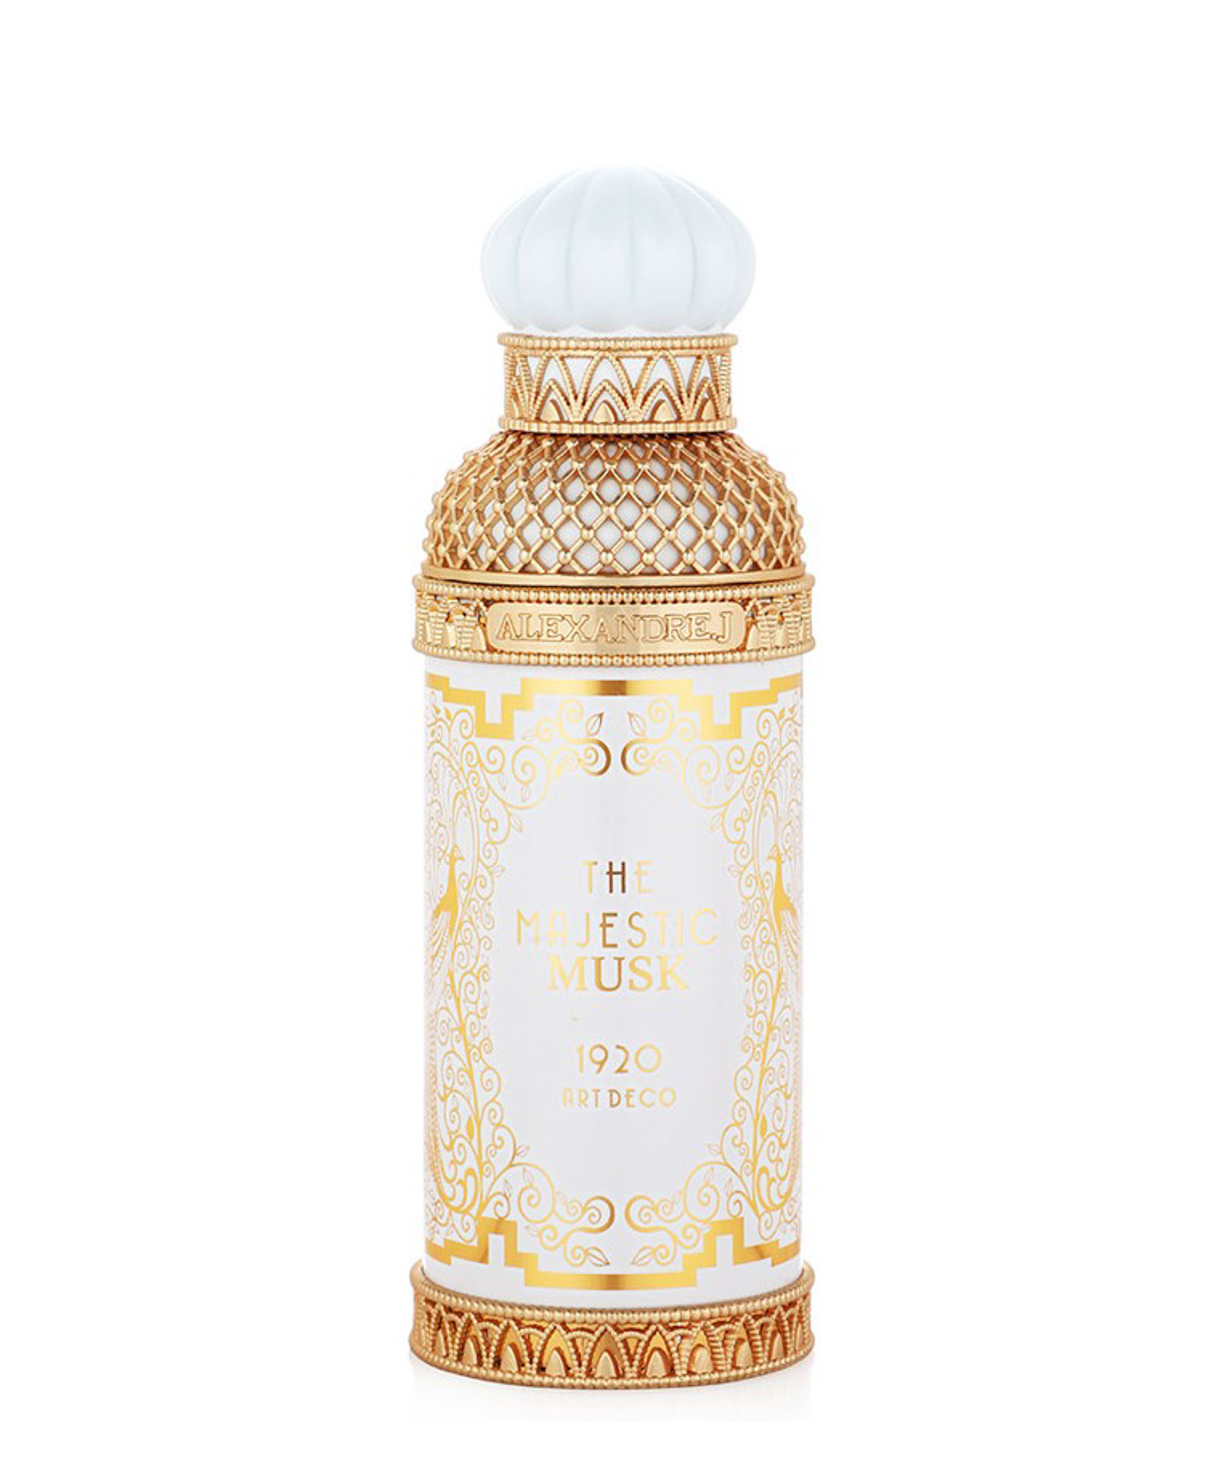 Perfume `Alexandre J The Majestic Musk` Eau De Parfum